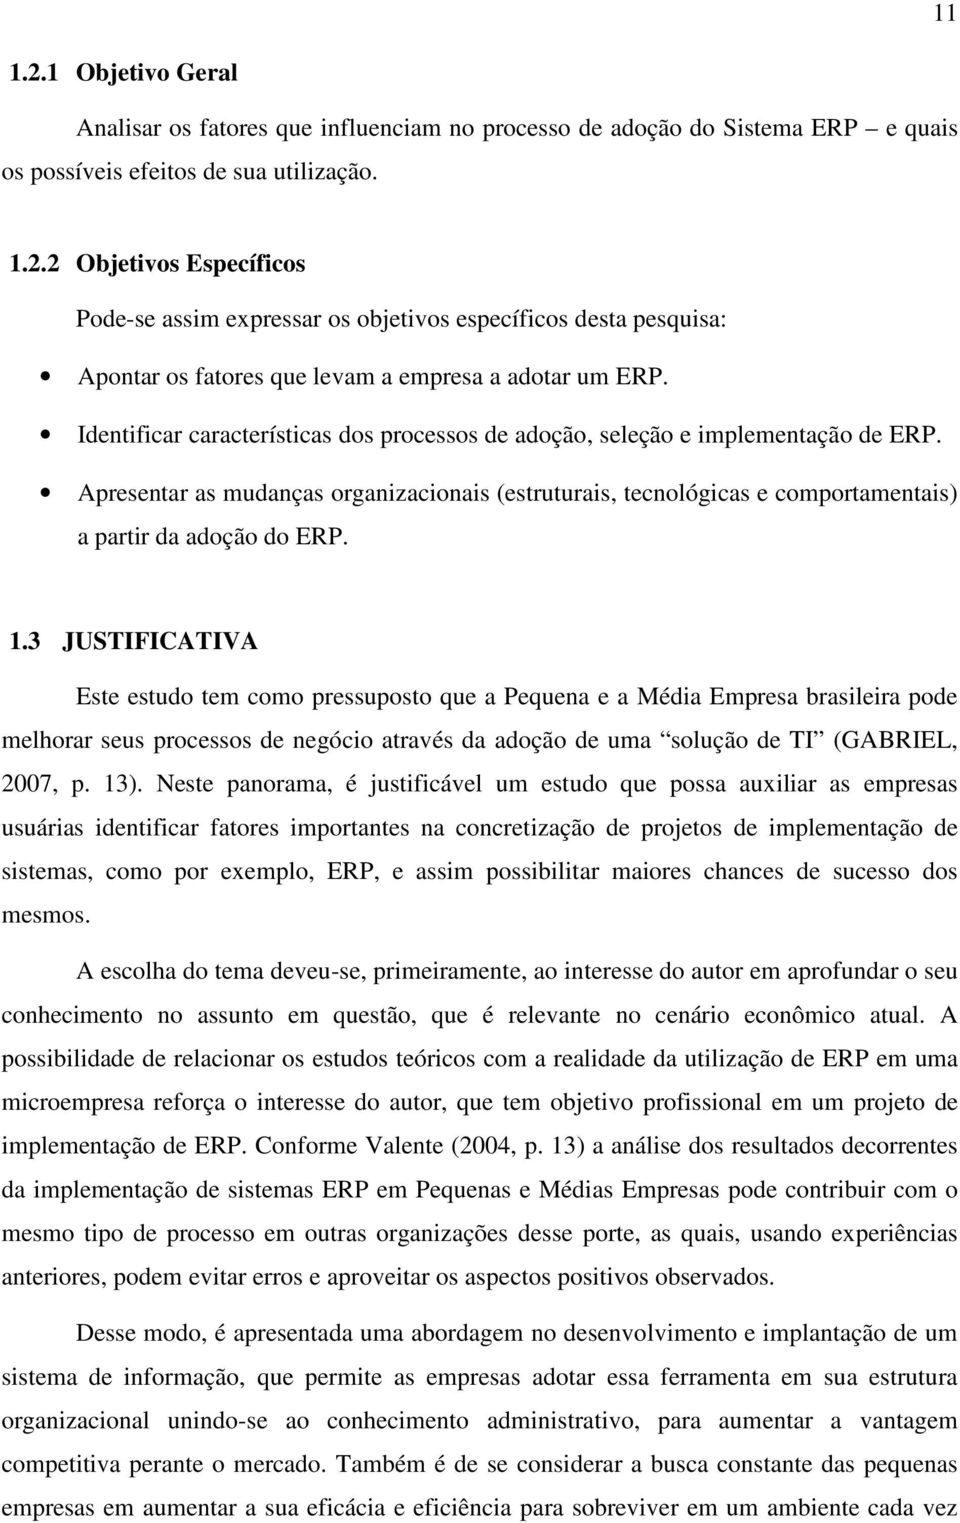 3 JUSTIFICATIVA Este estudo tem como pressuposto que a Pequena e a Média Empresa brasileira pode melhorar seus processos de negócio através da adoção de uma solução de TI (GABRIEL, 2007, p. 13).